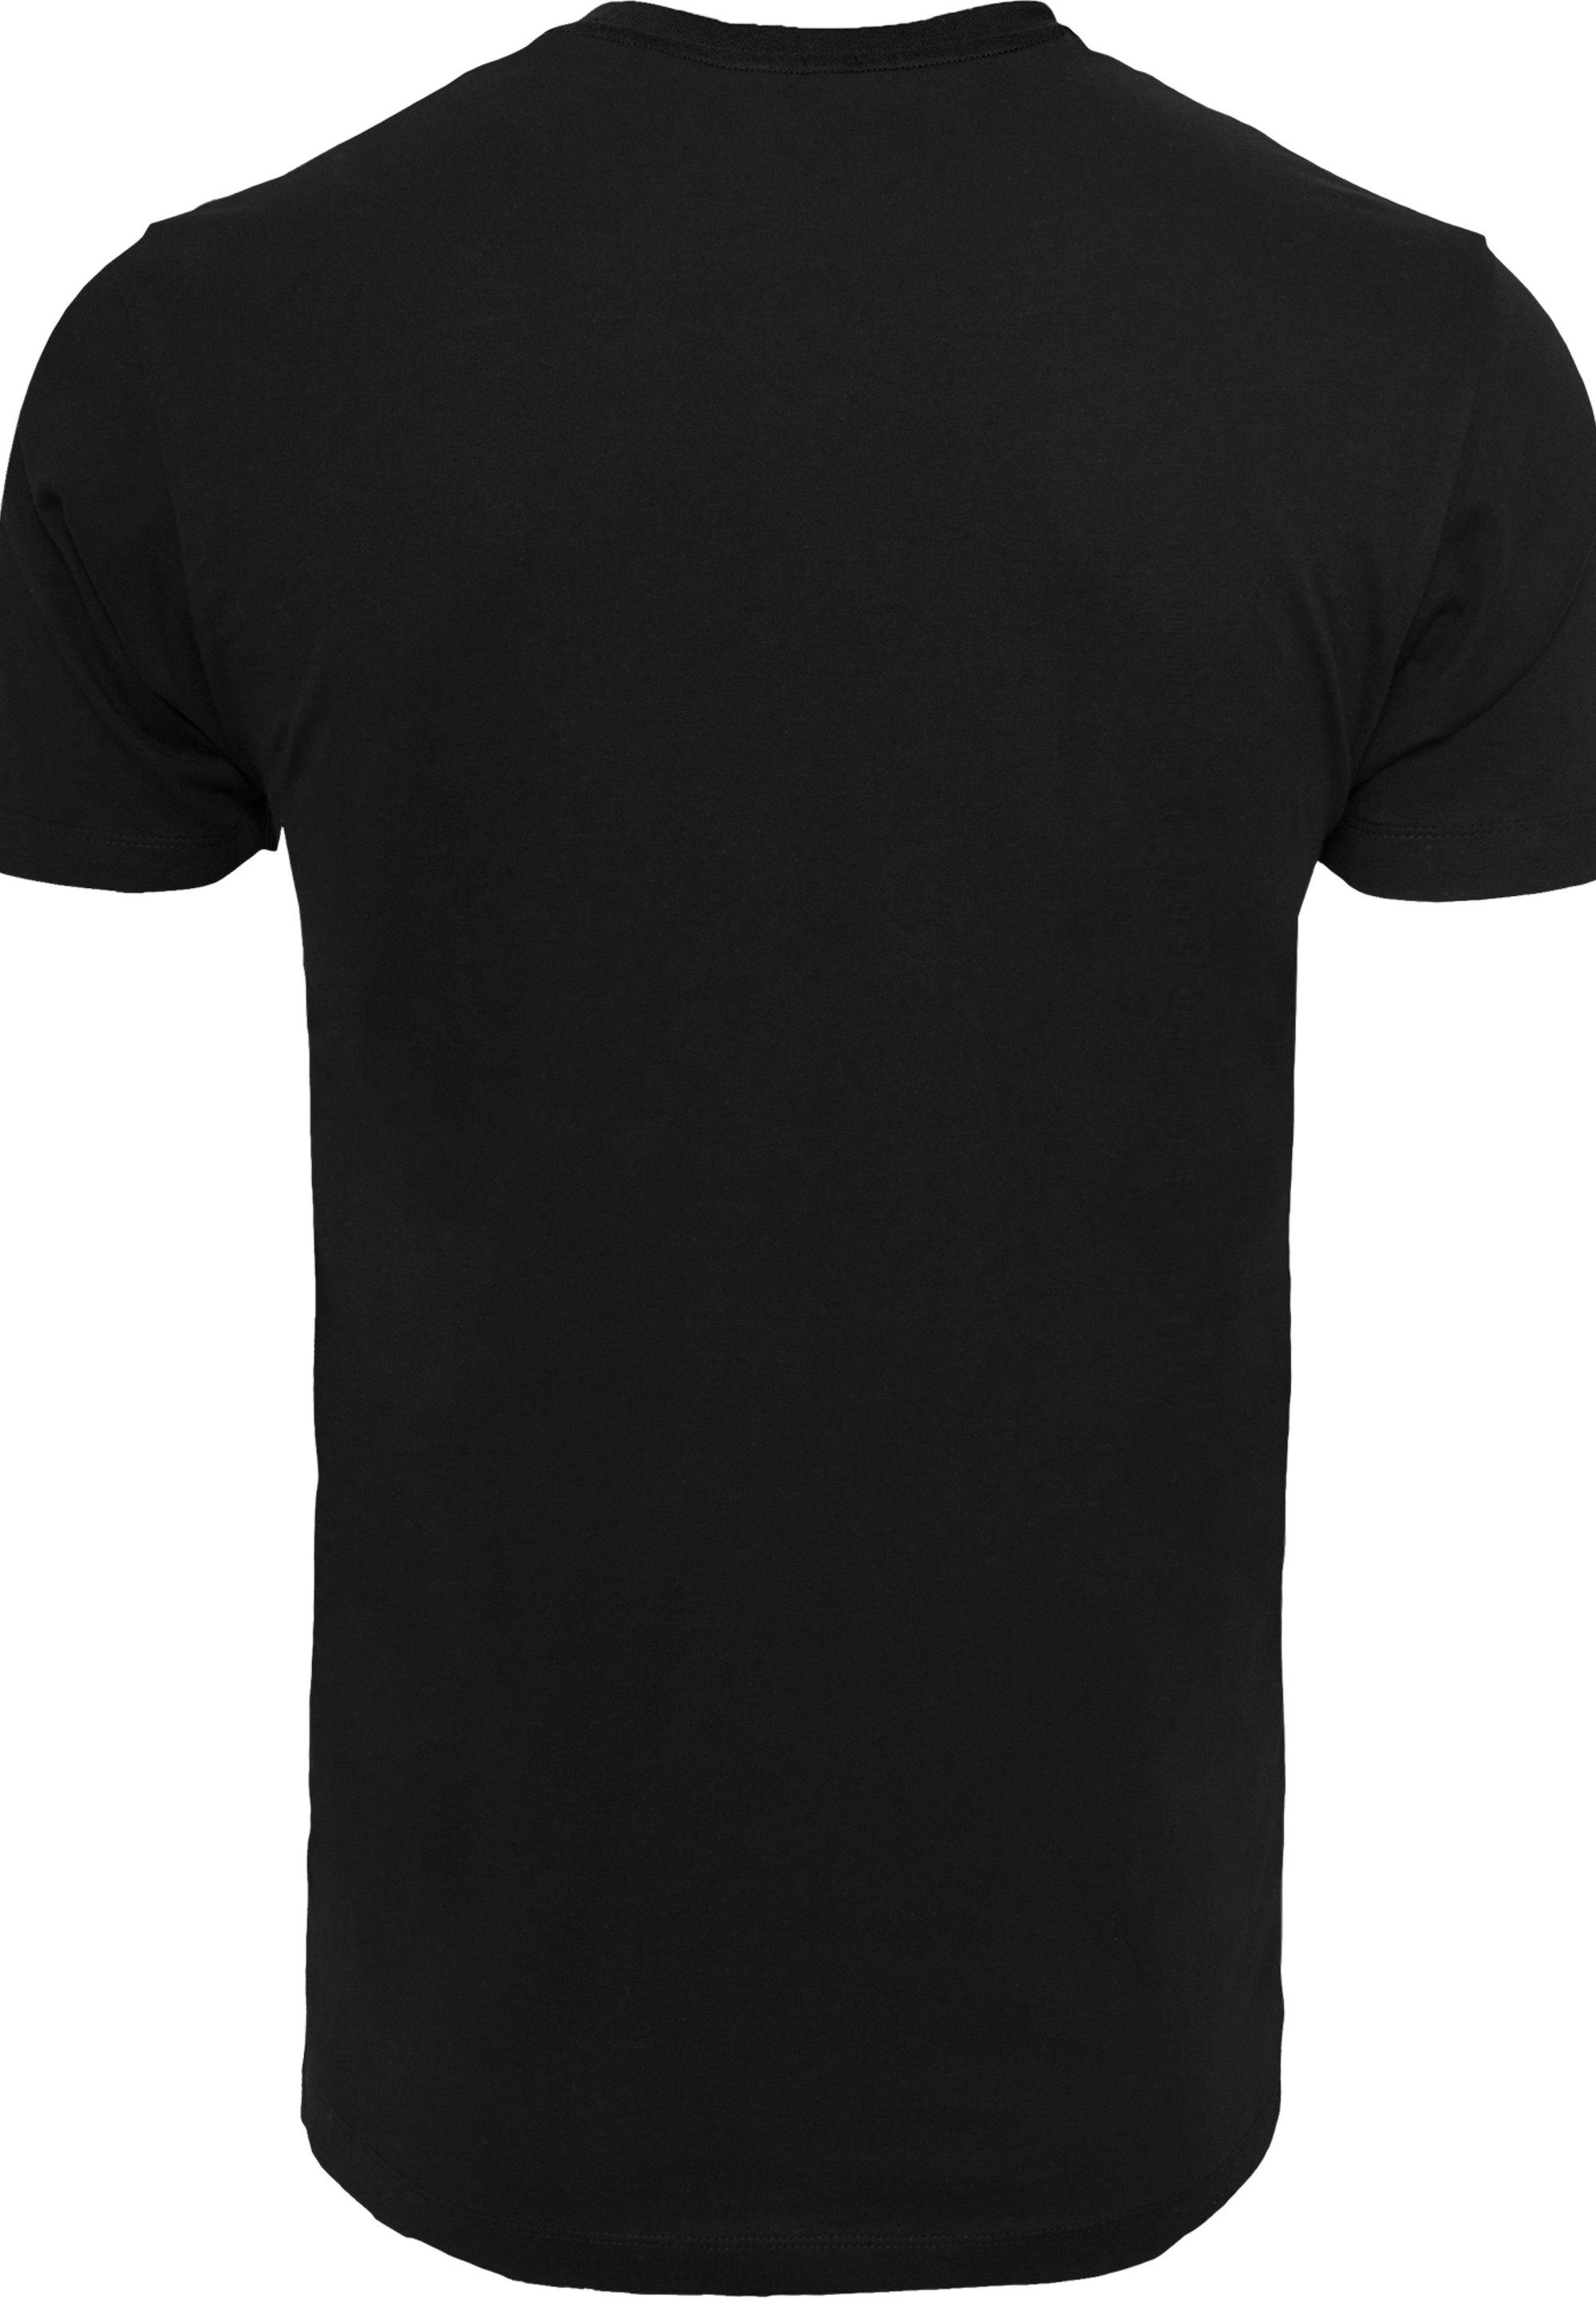 Familie Feuerstein Bamm Merch,Regular-Fit,Basic,Bedruckt T-Shirt Die Bamm Dino Herren,Premium And schwarz T-Shirt F4NT4STIC